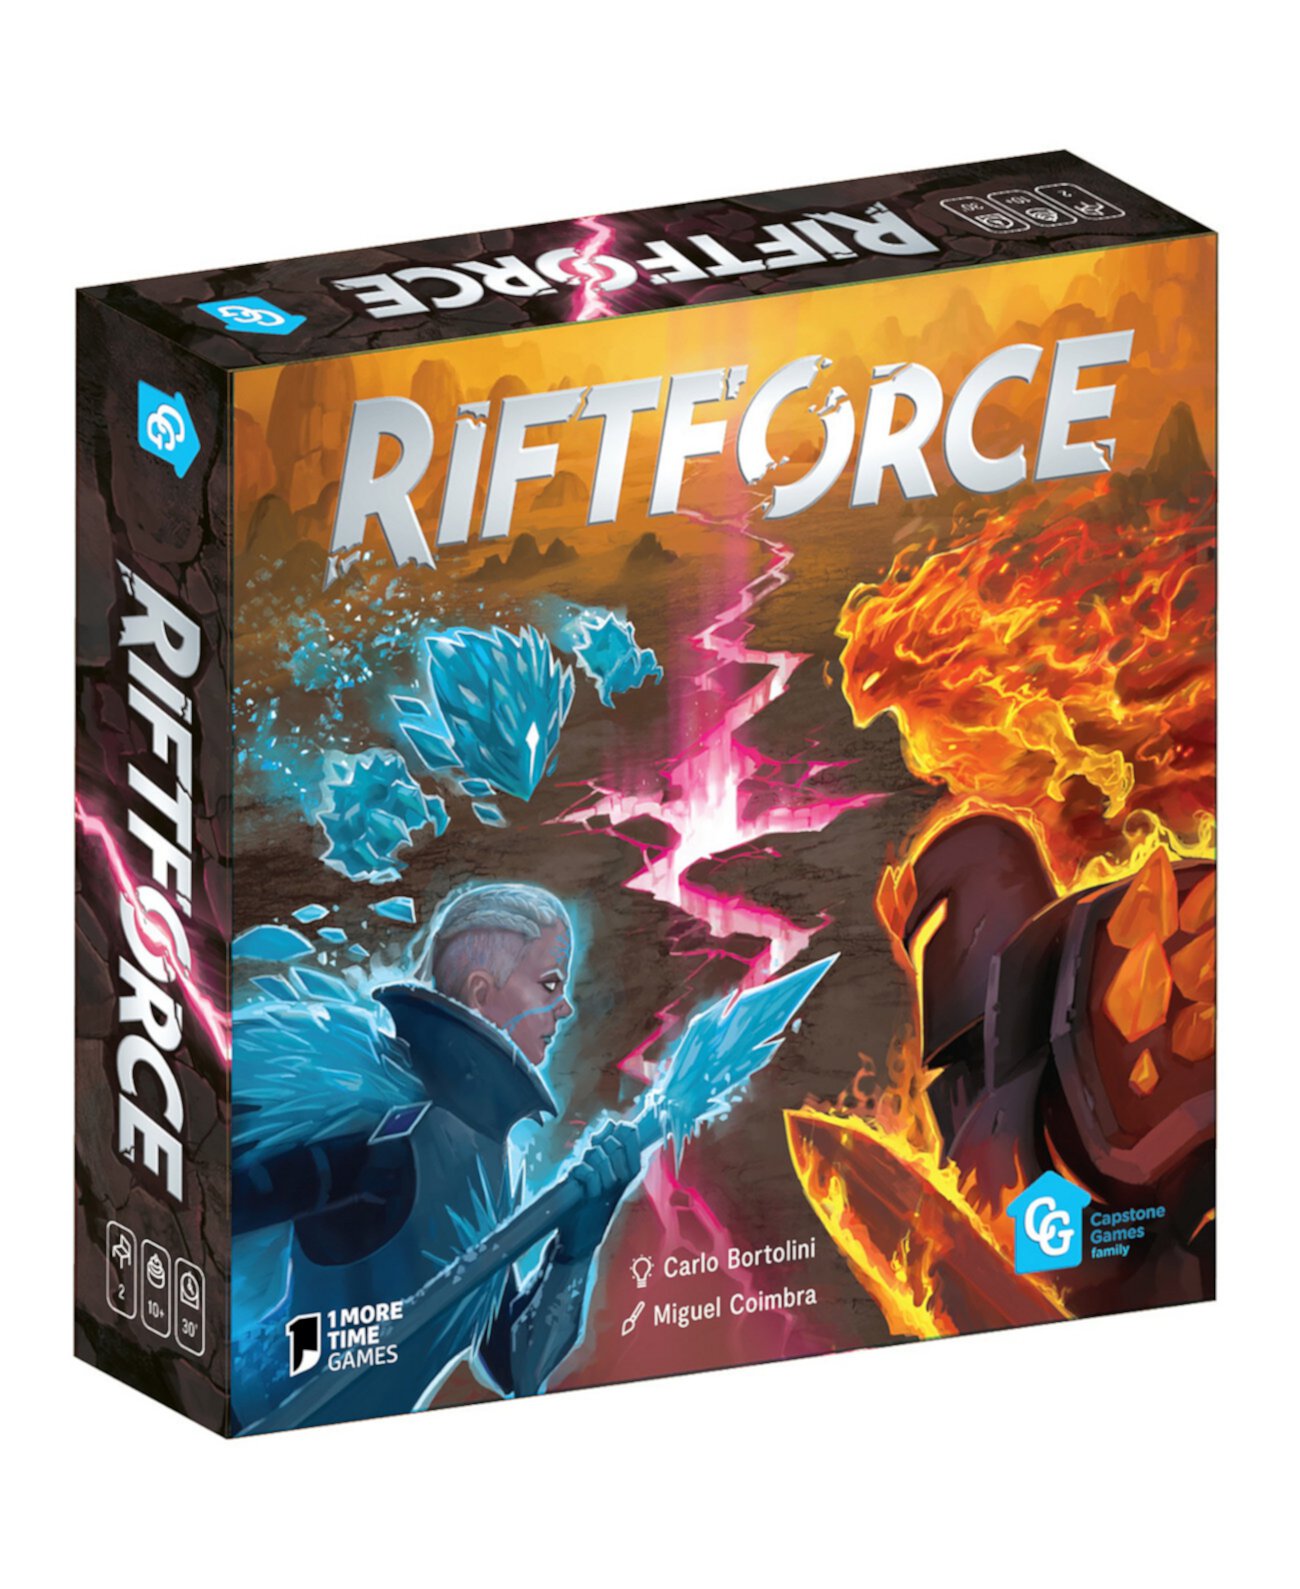 Составление карт Riftforce, перемещение по области, управление руками, игровой набор для создания колоды Capstone Games